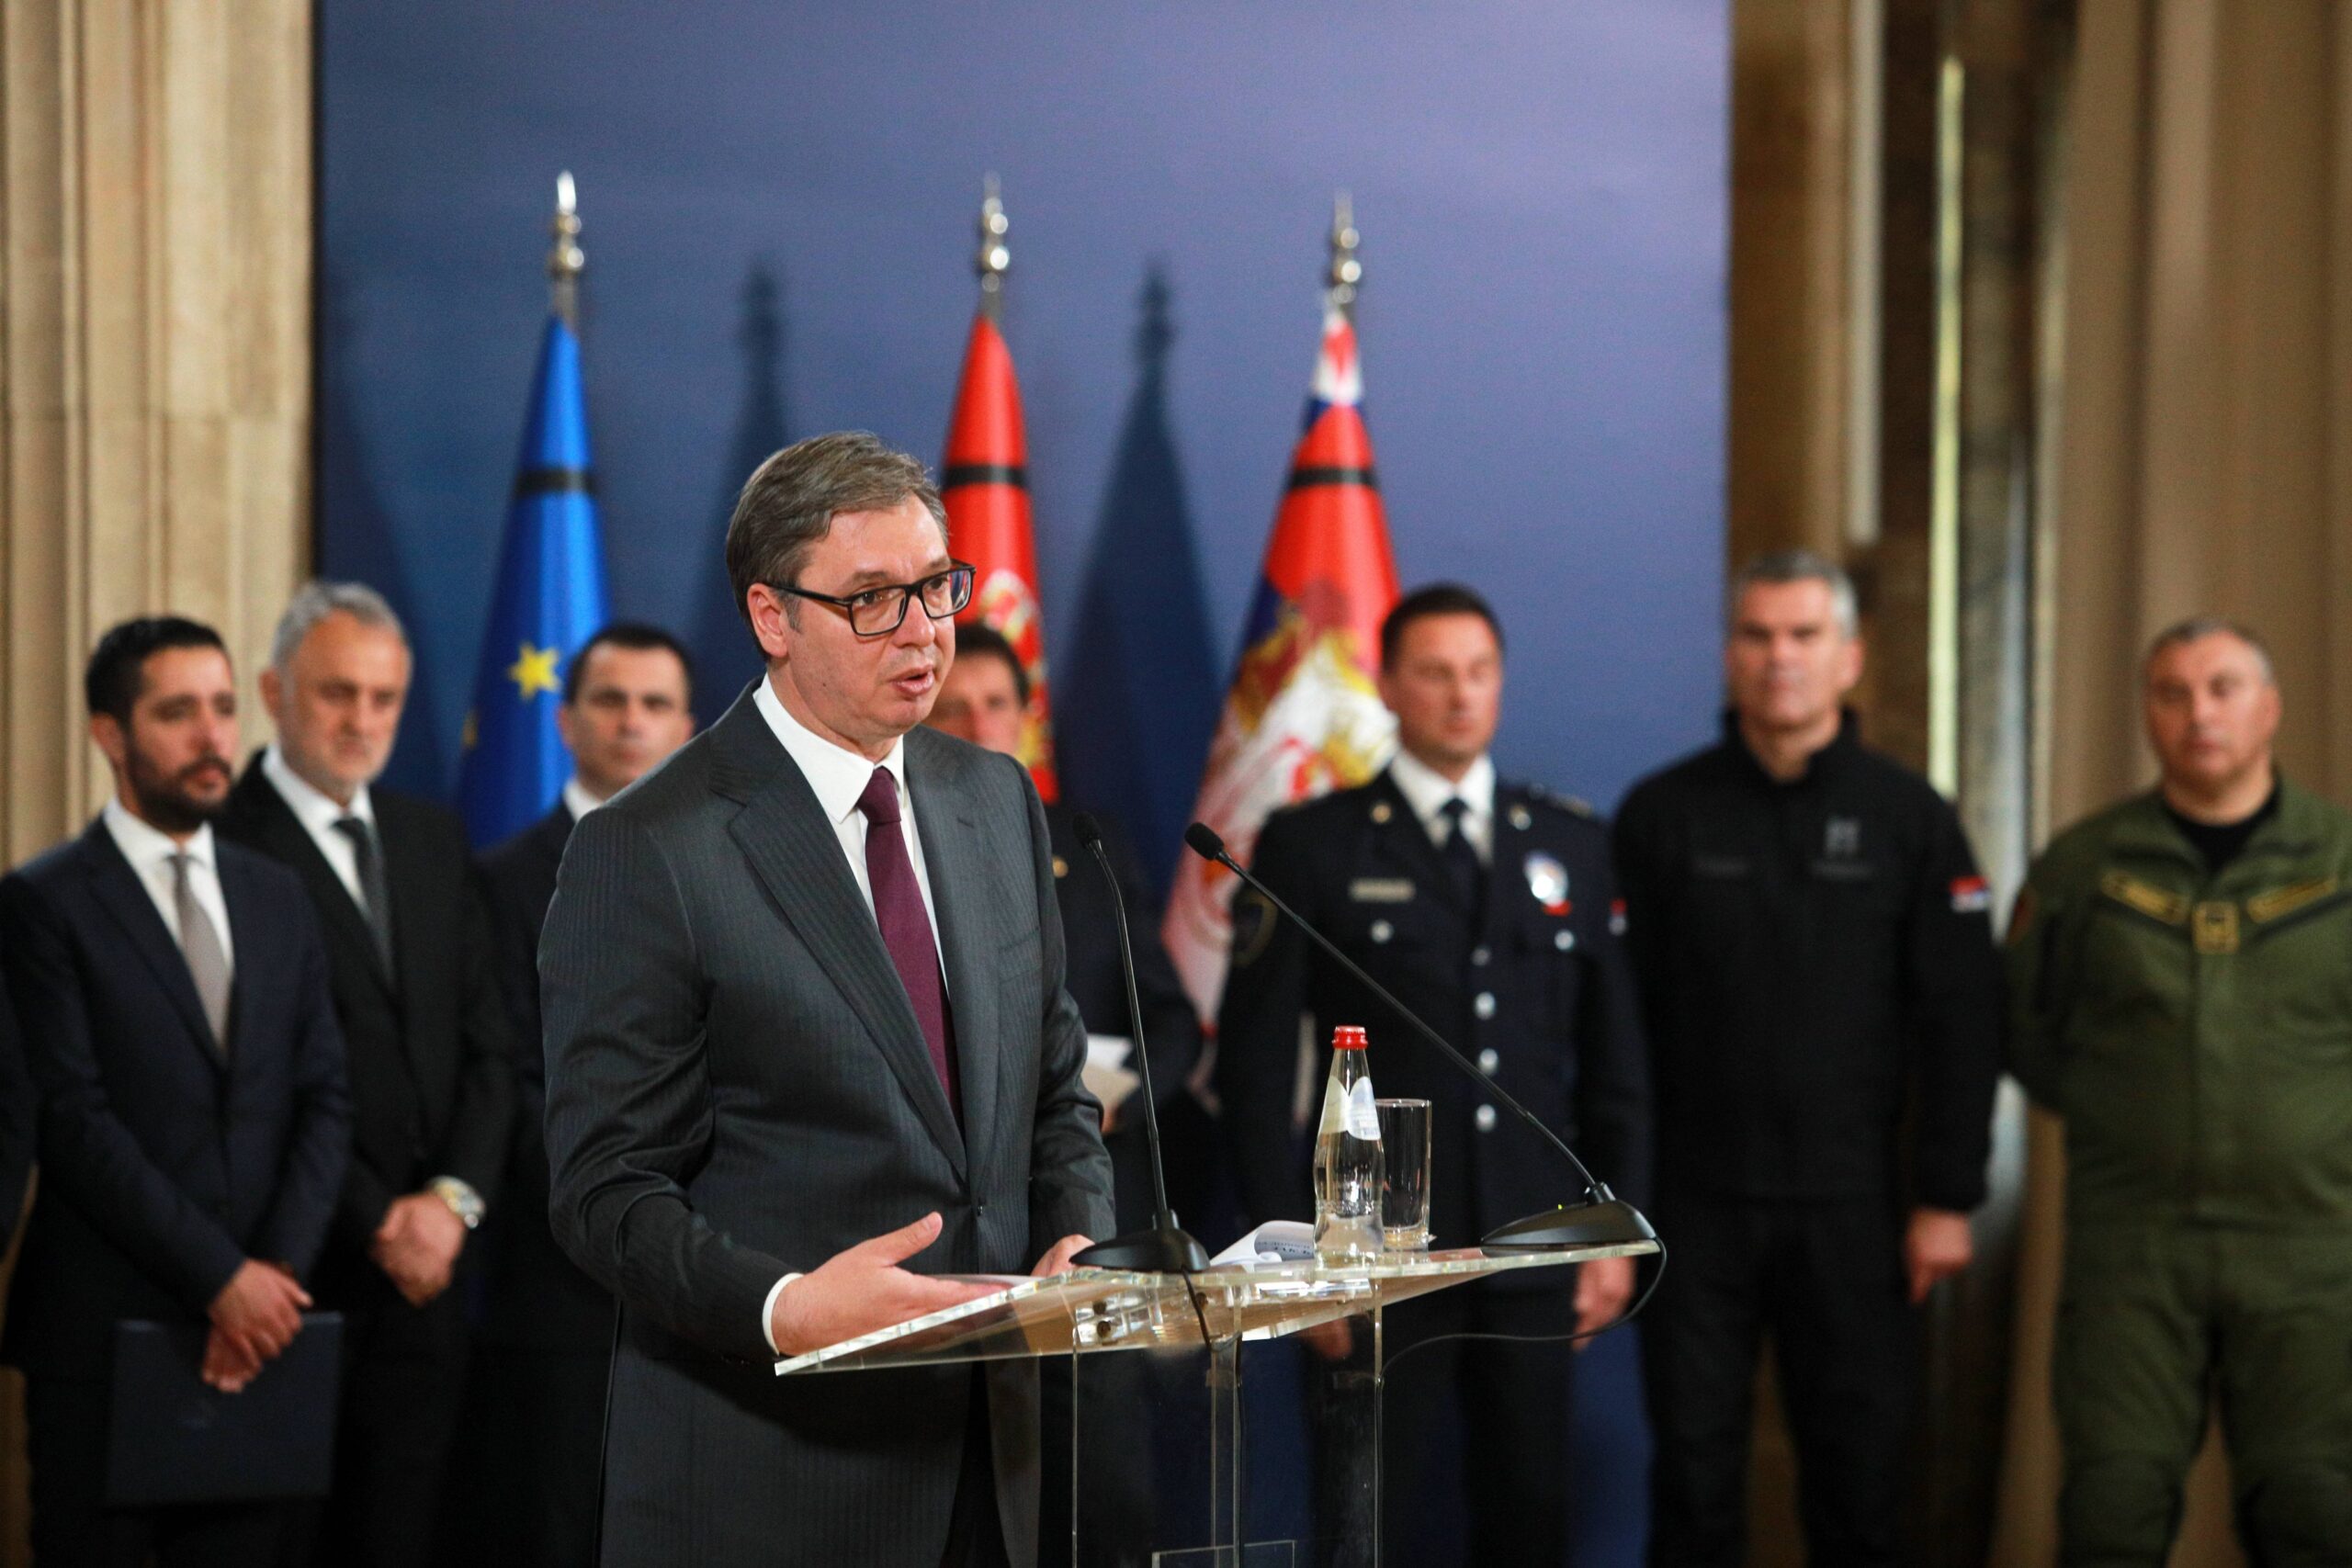 “Popolnoma bomo razorožili Srbijo” – Srbski predsednik Aleksandar Vučić napovedal spremembe zakona o orožju